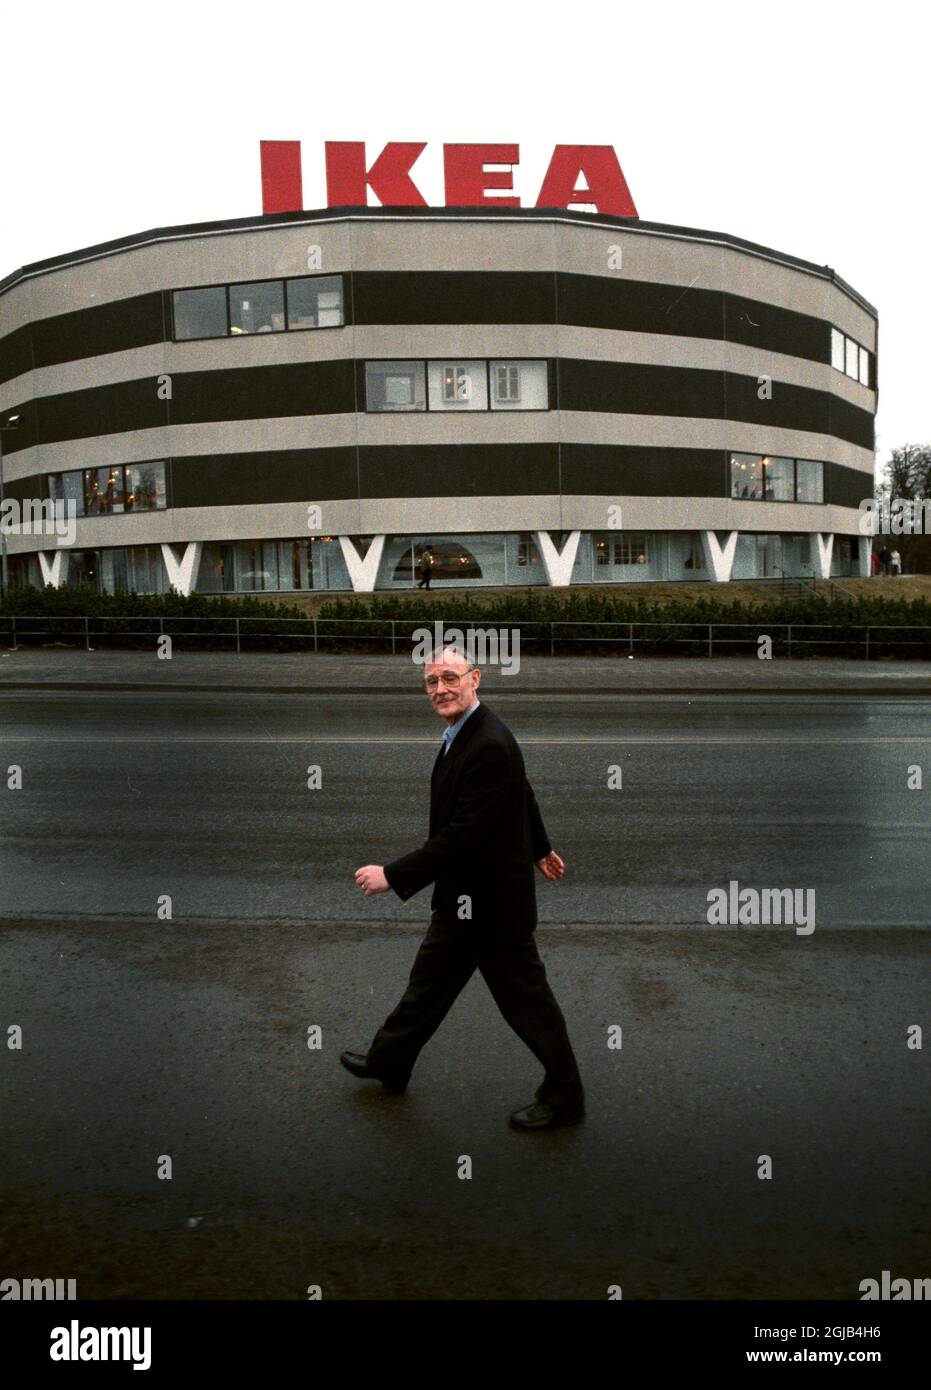 DOSSIER 1991 le géant du meuble, Ingvar Kamprad, fondateur d'IKEA, devant le magasin de Skarholmen au sud de Stockholm 1991. Foto: Lars Nyberg / XP / SCANPIX / Kod: 34 **AFTONBLADET OUT** Banque D'Images